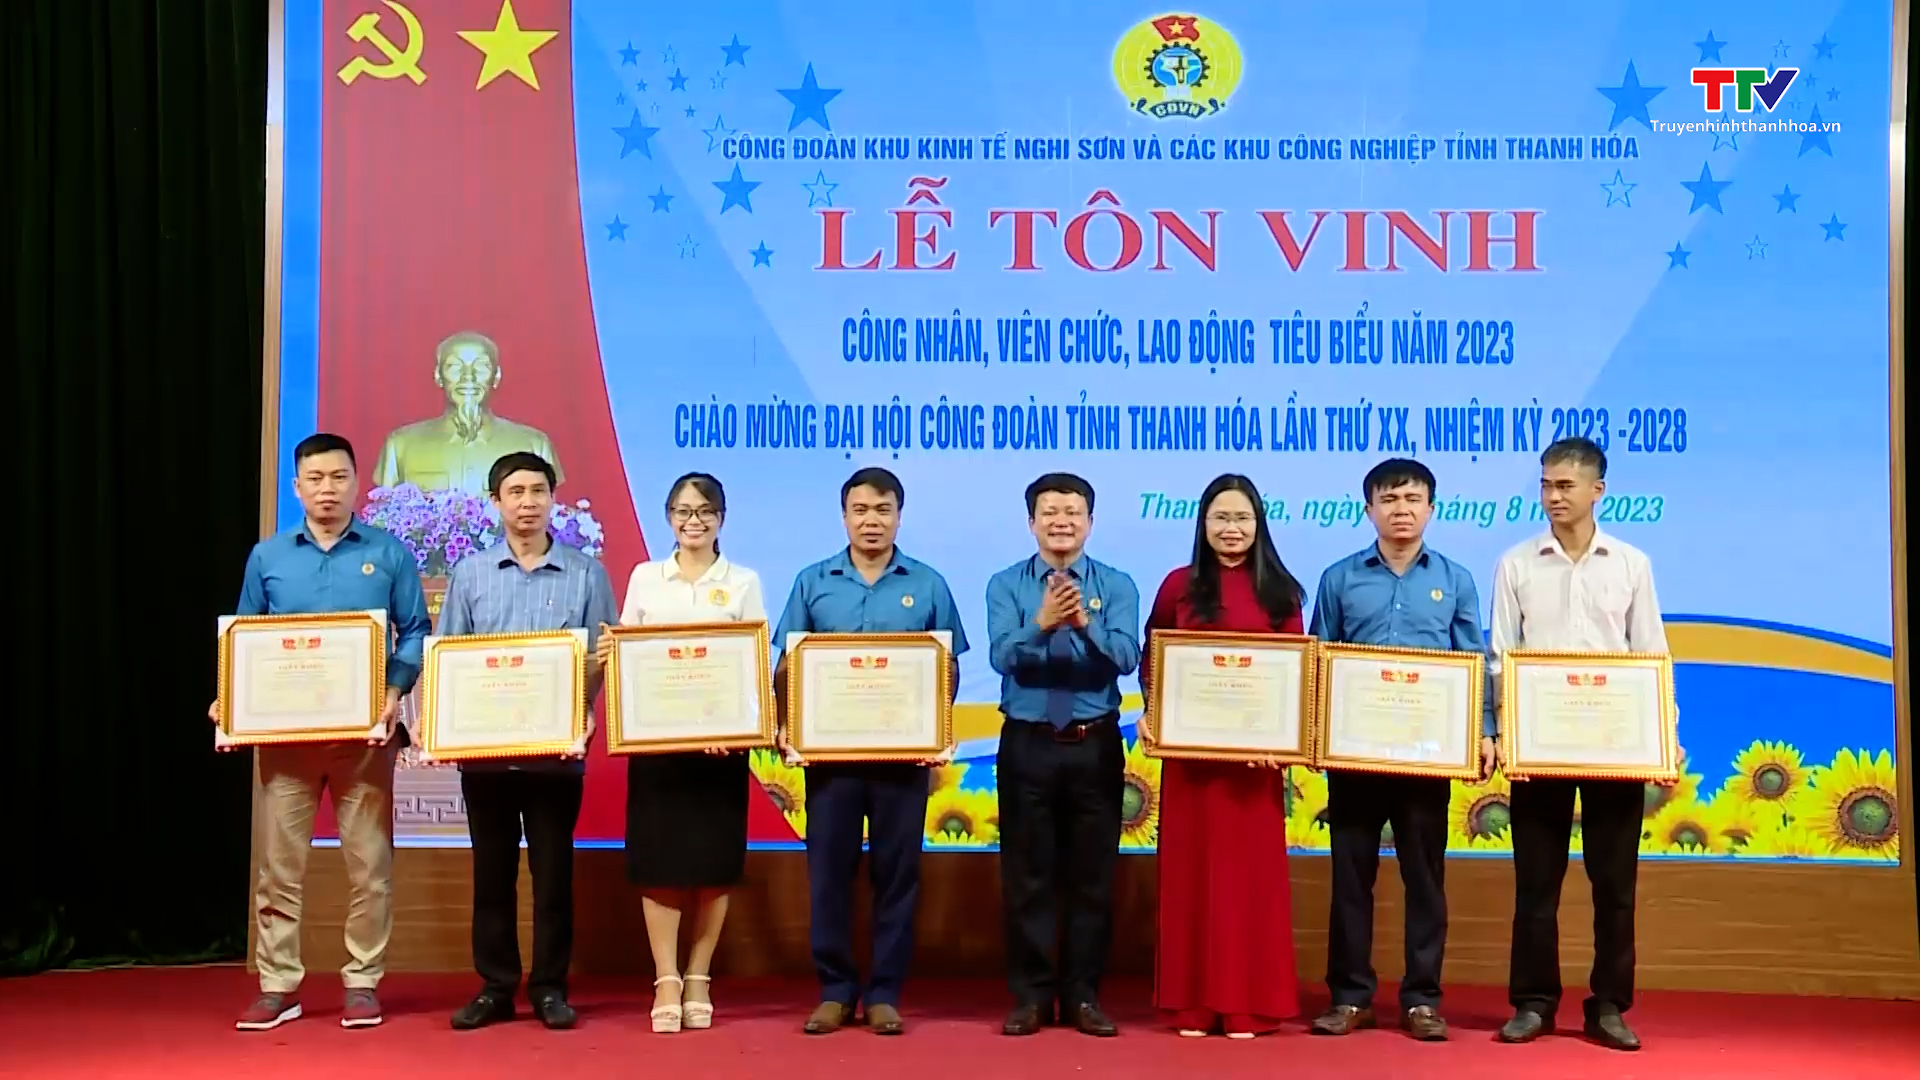 Công đoàn Khu kinh tế Nghi Sơn & các khu công nghiệp tỉnh Thanh Hóa tôn vinh công nhân, viên chức, lao động tiêu biểu  - Ảnh 4.